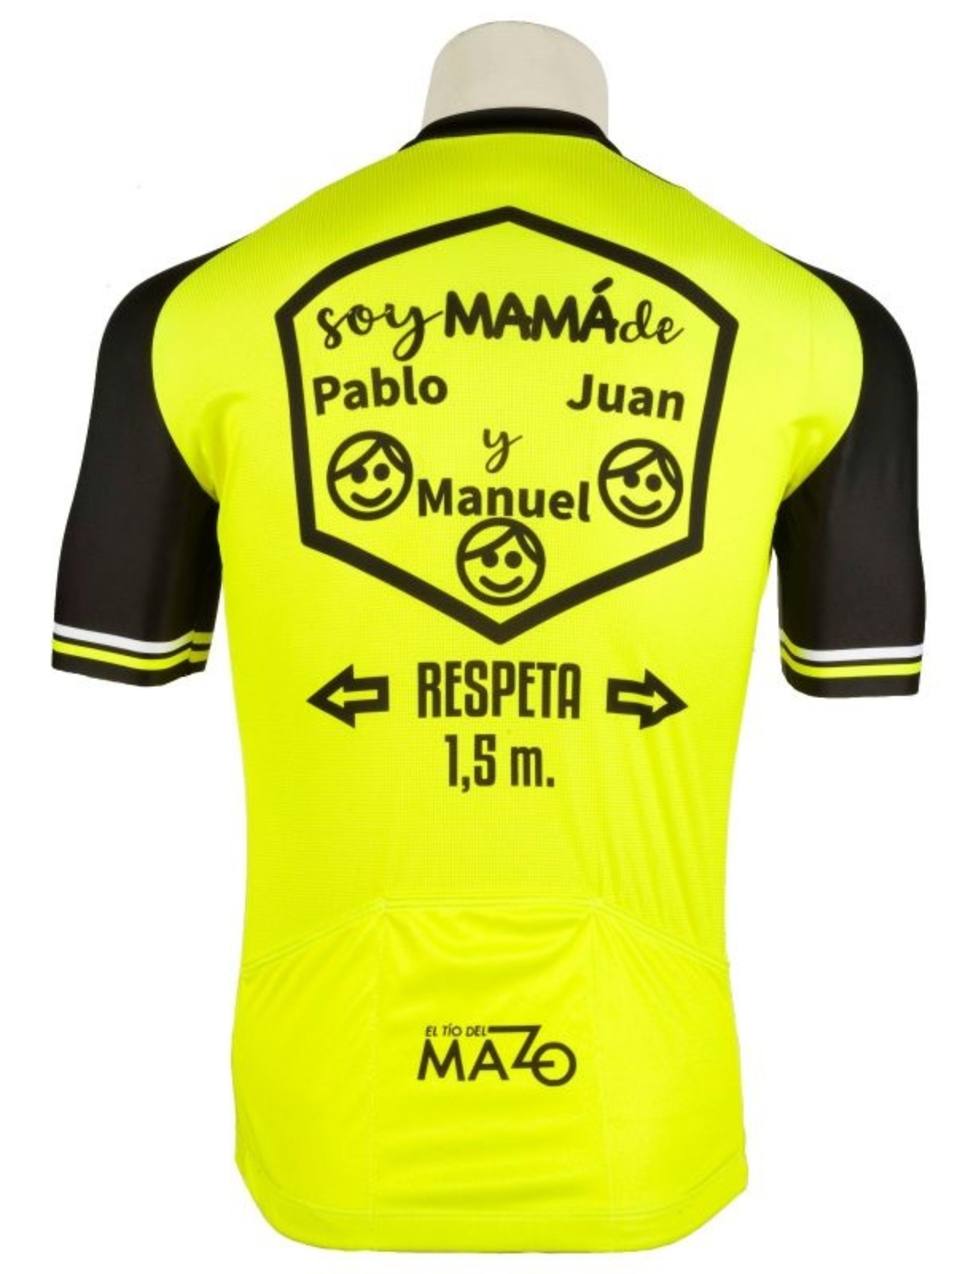 Vista esférico hogar El Tío del Mazo crea un maillot personalizado con el nombre de los hijos  para el Día de la Madre - Deportes - COPE